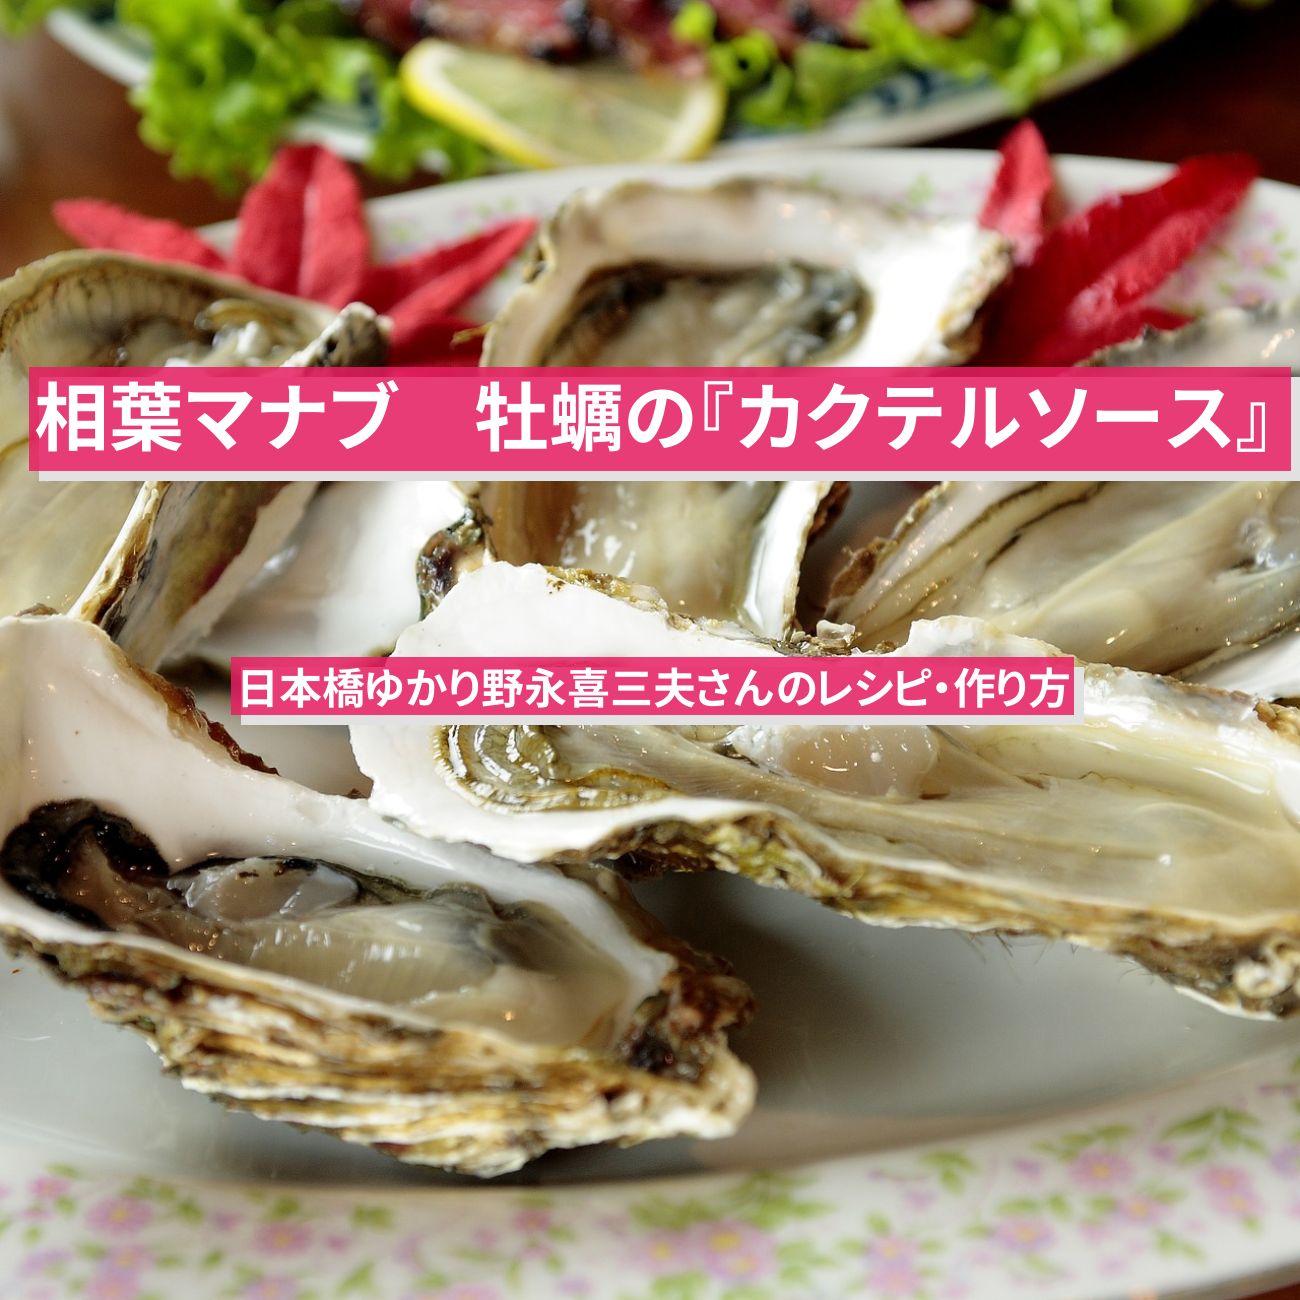 【相葉マナブ】牡蠣の『万能カクテルソース』日本橋ゆかり野永喜三夫さんのレシピ・作り方